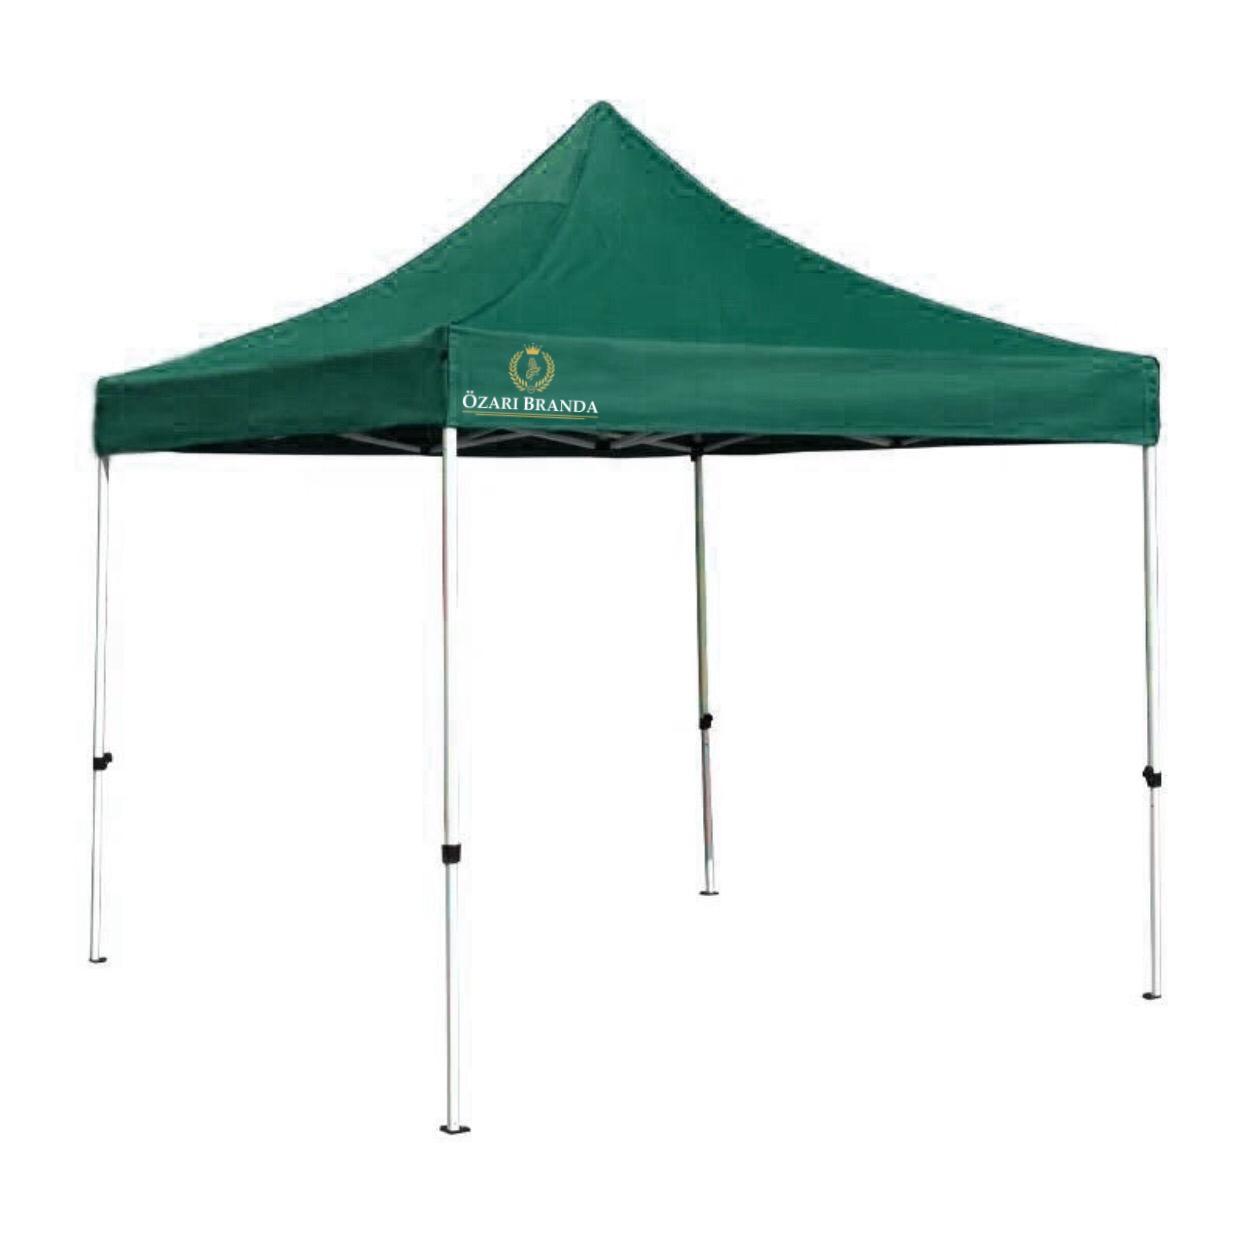 3x3 Katlanabilir Çardak Gazebo Stand Çadırı Koyu Yeşil Renk